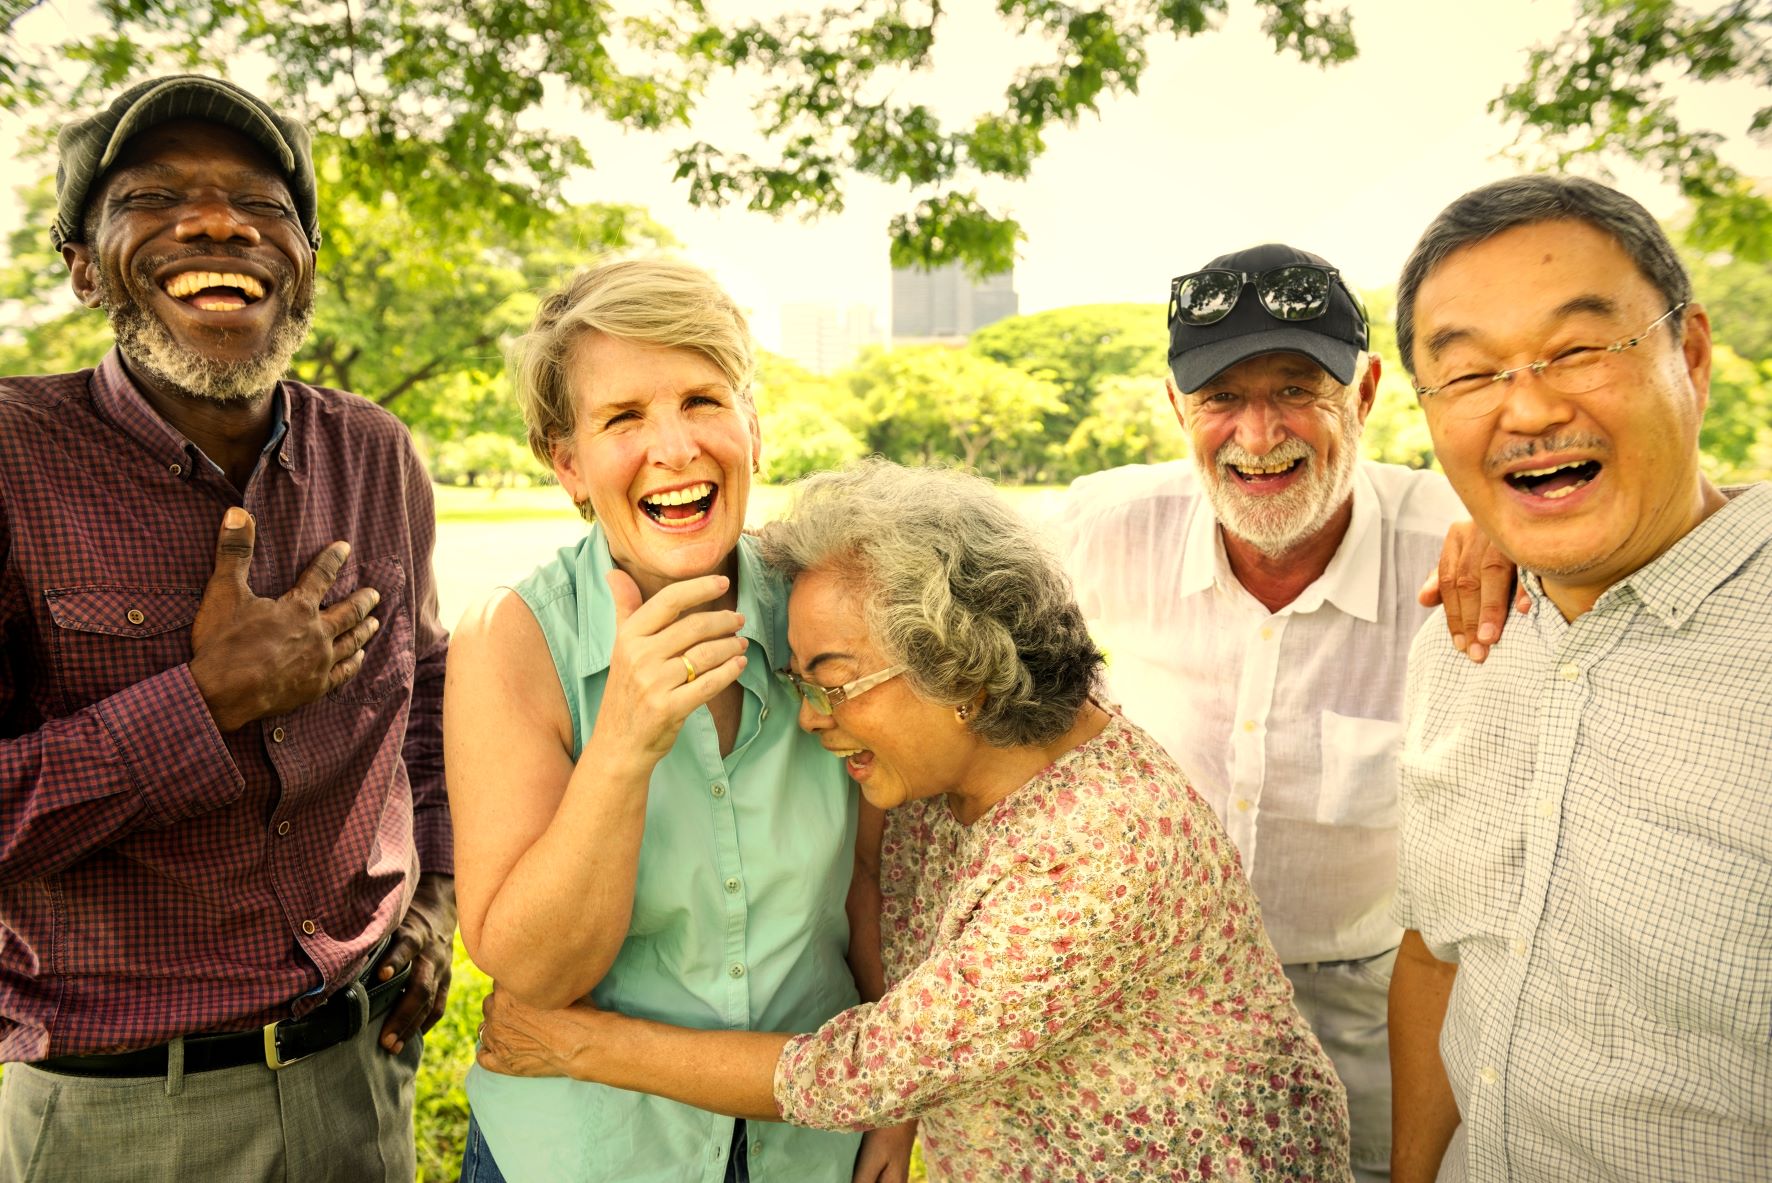 happy older adults penn village